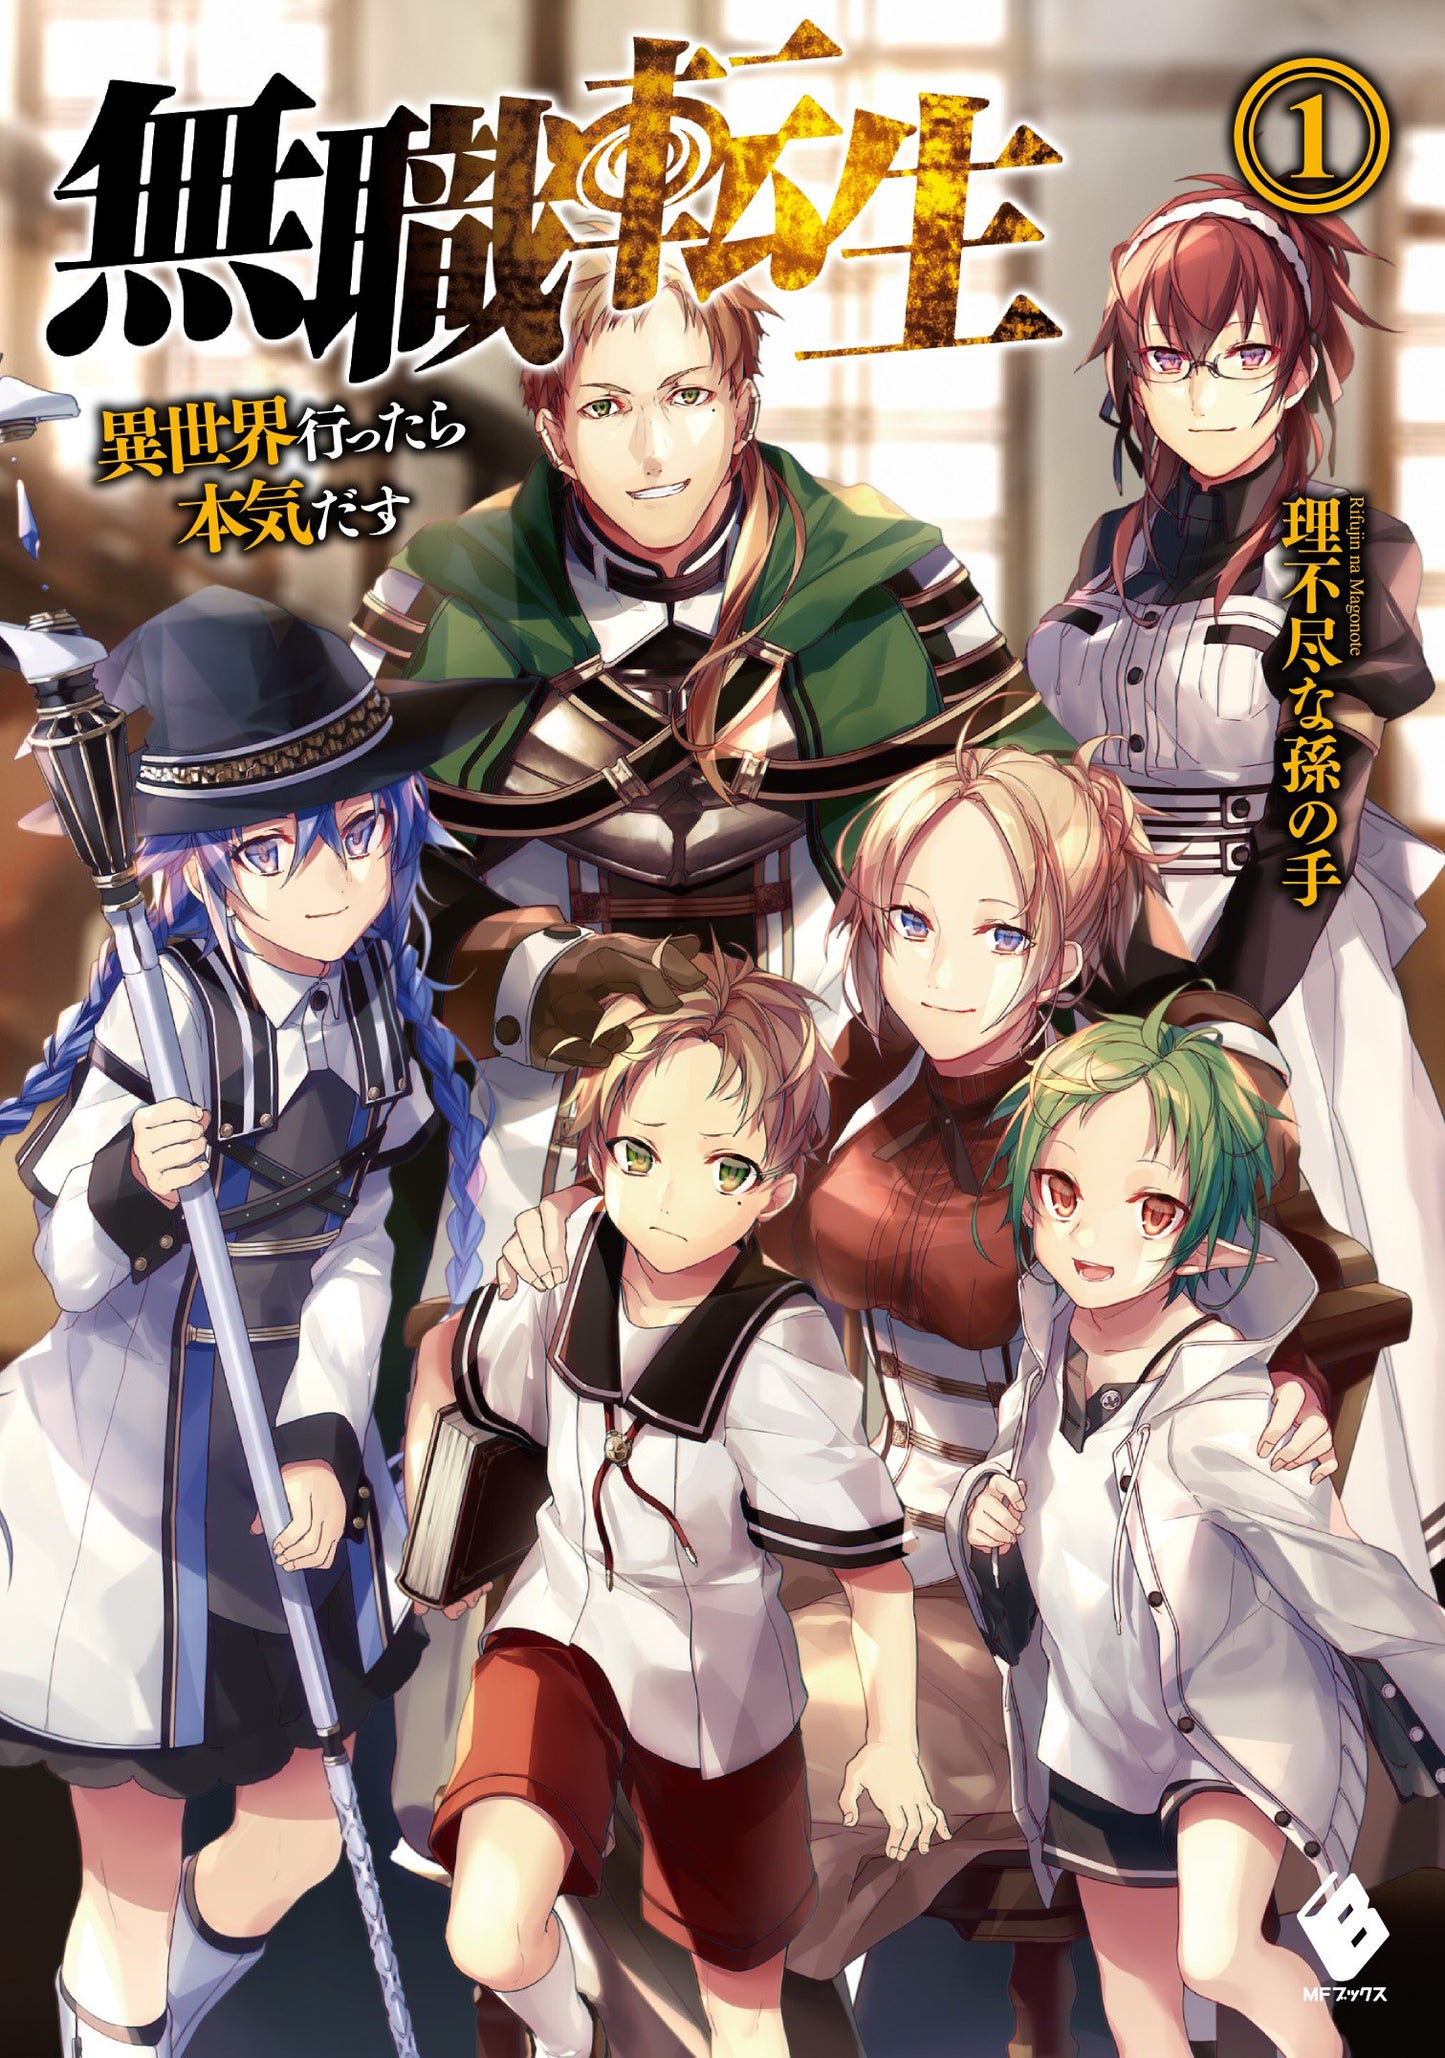 Mushoku Tensei: Jobless Reincarnation Japanese light novel volume 1 front cover